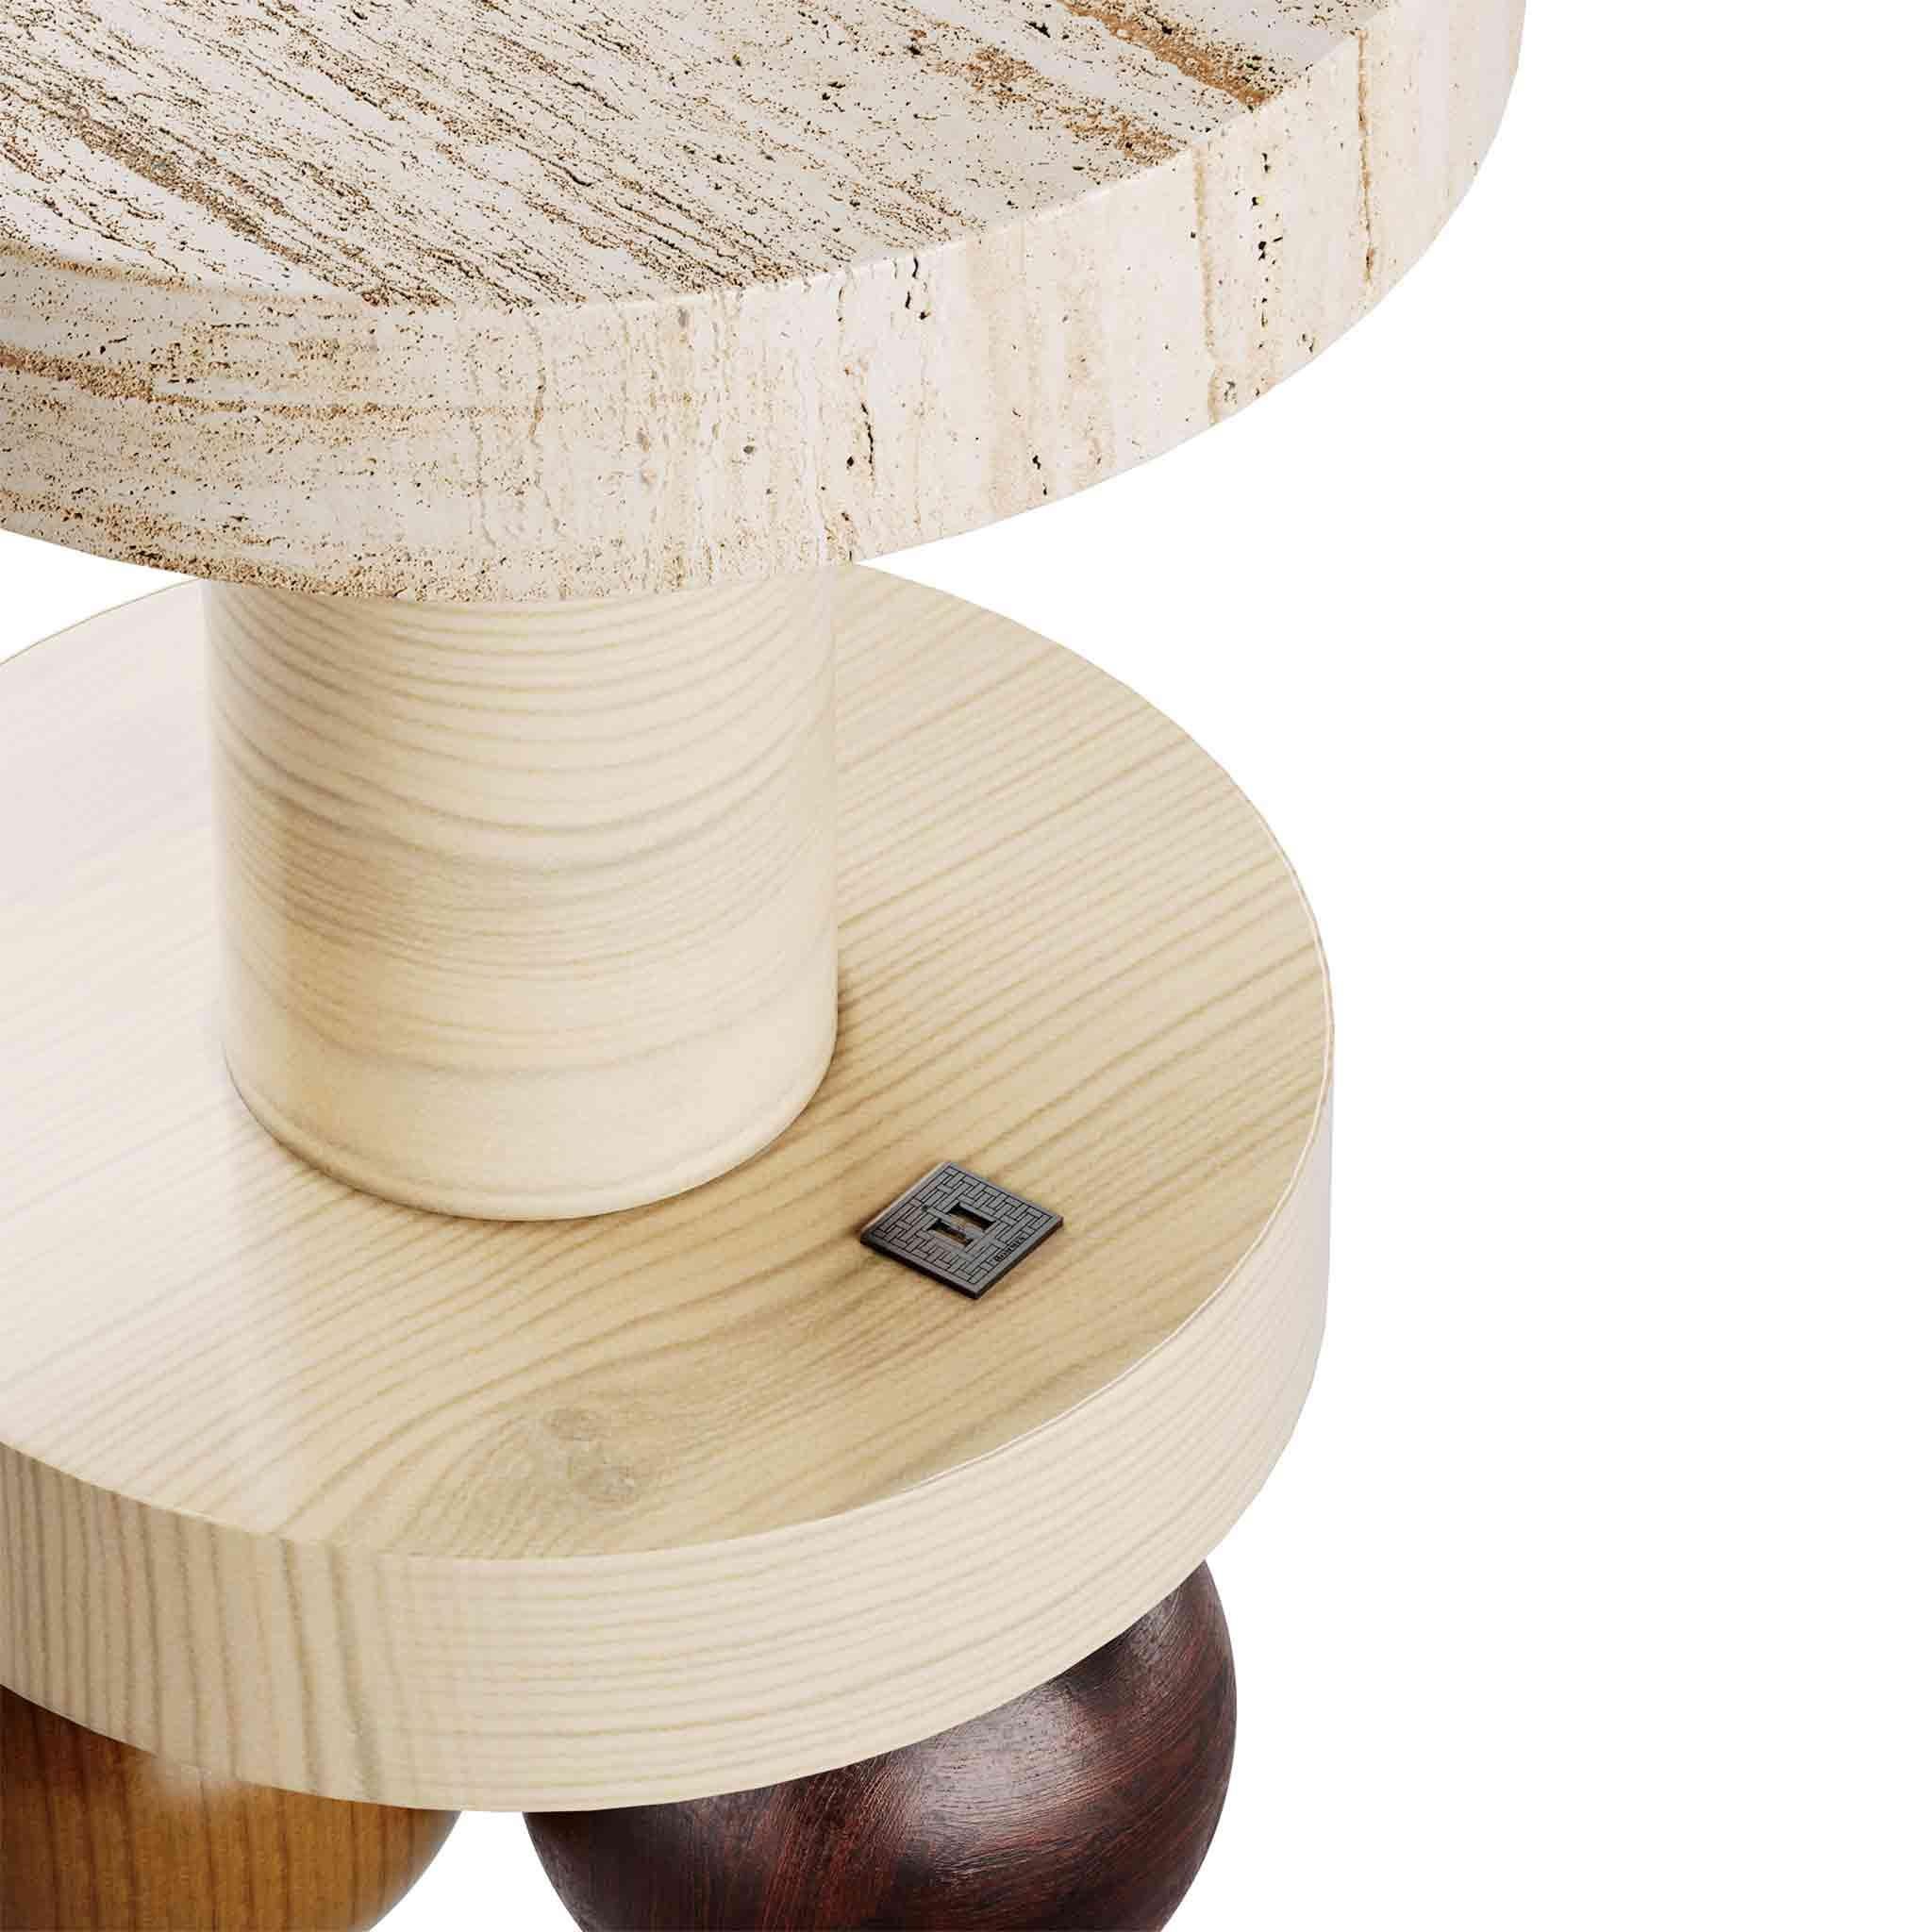 La table d'appoint Duna est une table sculpturale en travertin dont un salon moderne ne peut se passer, et vous non plus. Sélection exquise de matériaux, cette table contemporaine apporte de la modernité par sa simplicité géométrique et sa forme